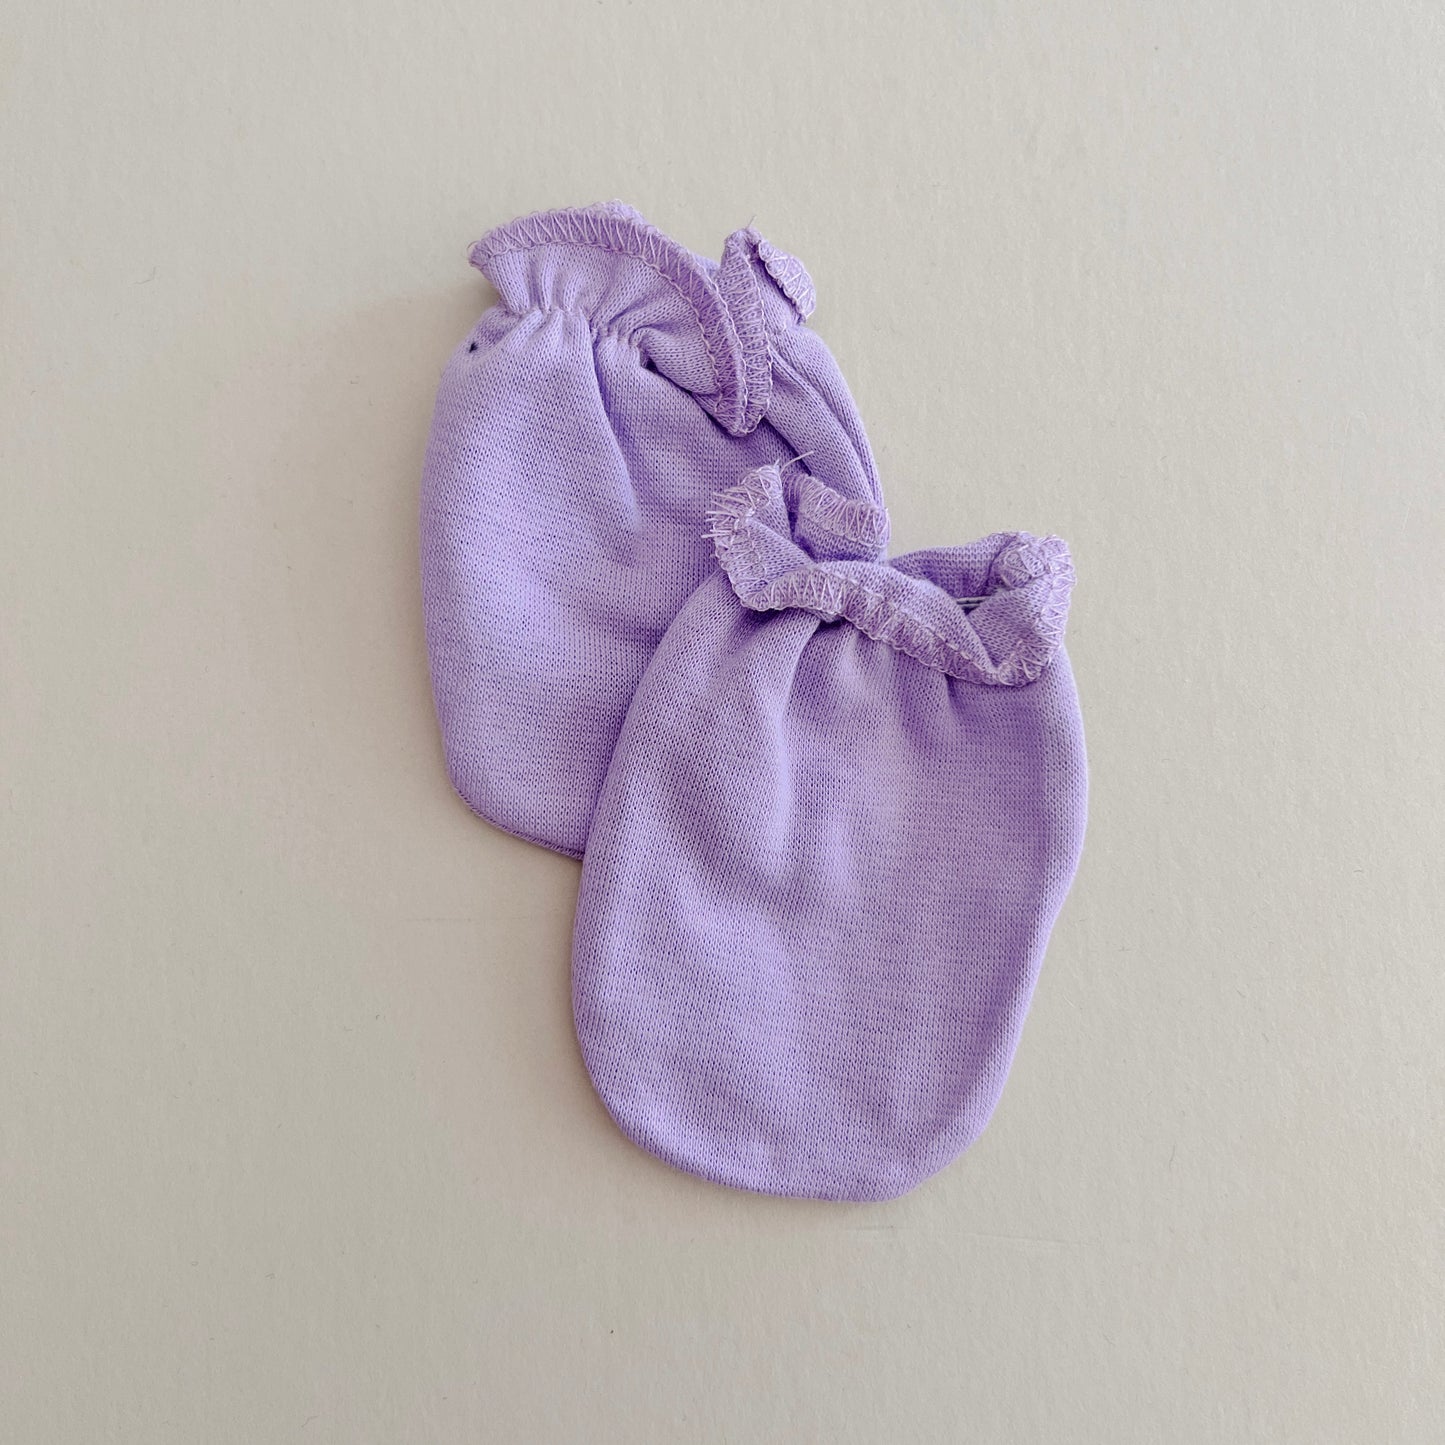 Violet Baby Mittens